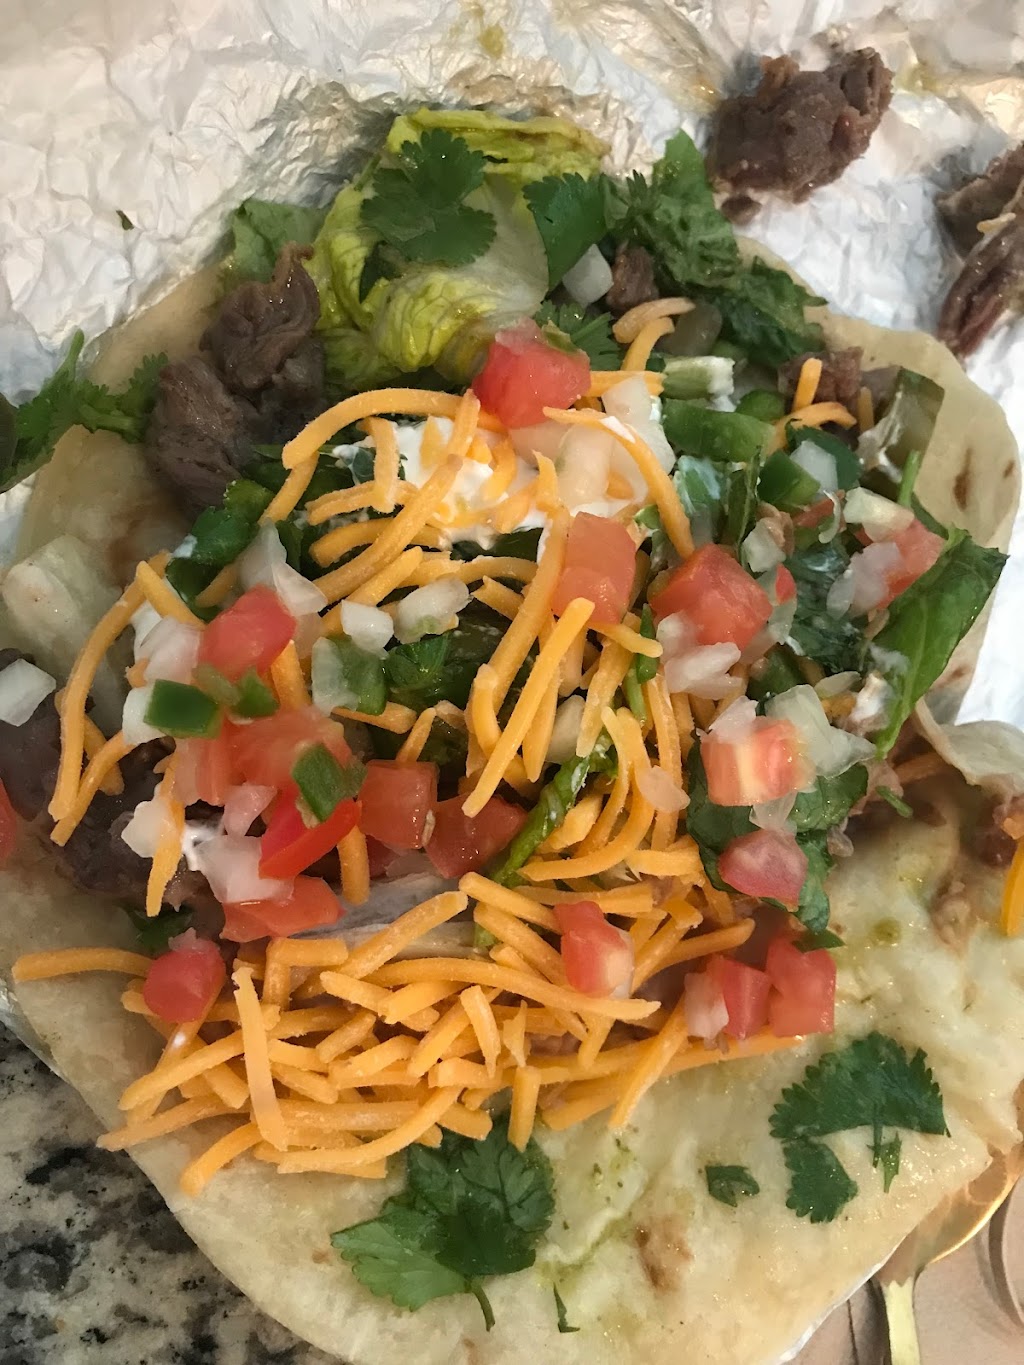 Laredo Taco Company | restaurant | 13635 Preston Rd, Dallas, TX 75240, USA | 2145424169 OR +1 214-542-4169